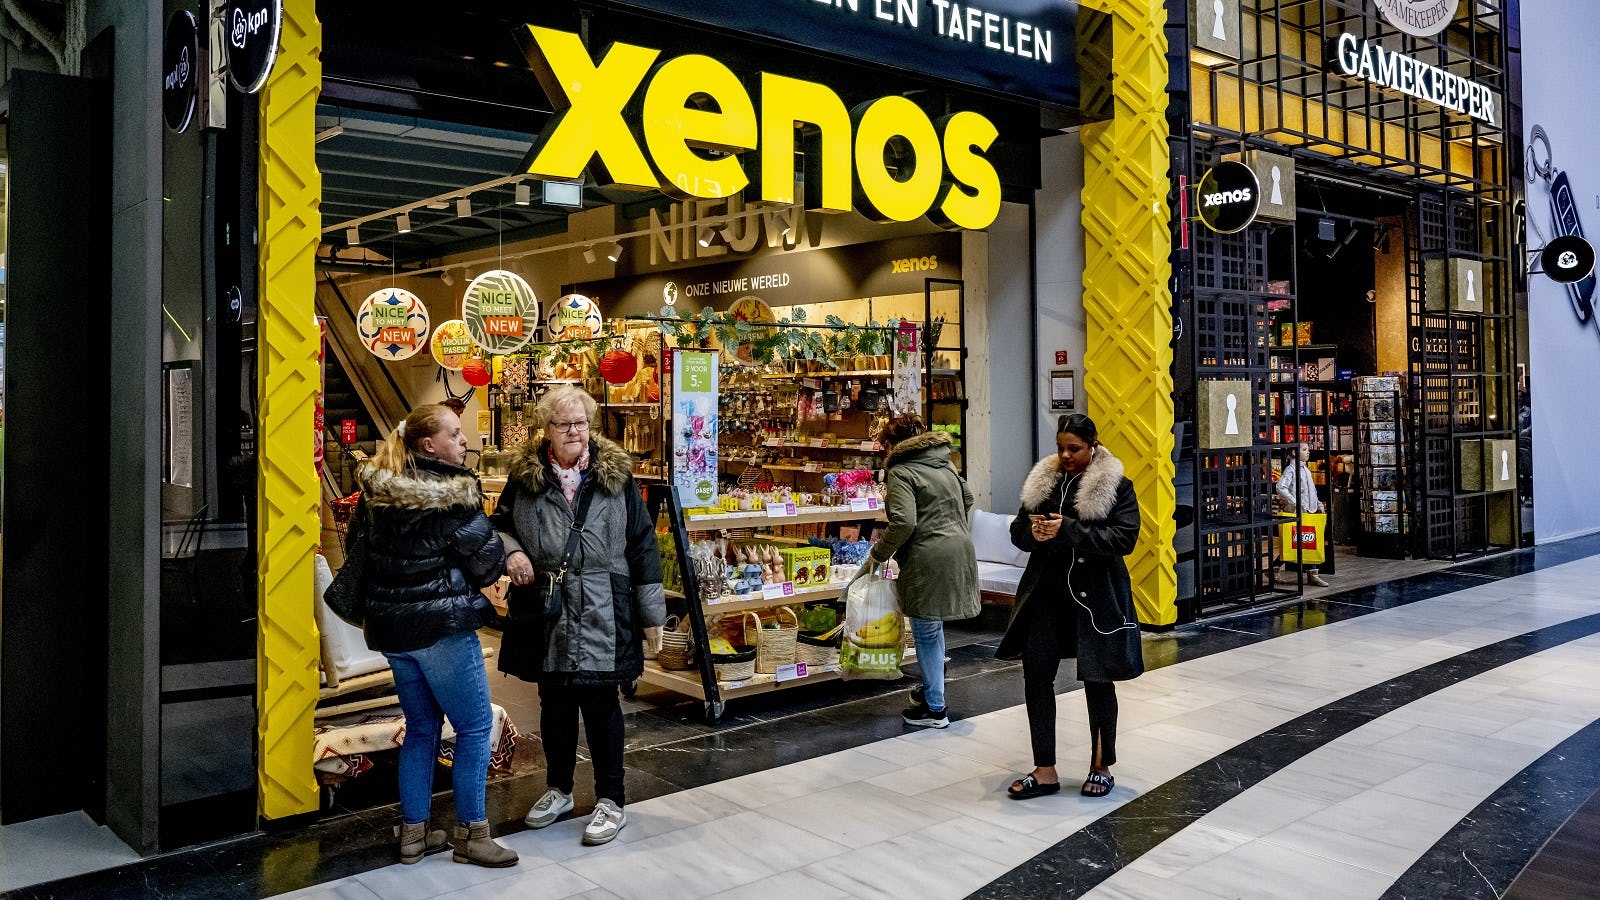 Winkelketen Xenos. Na de komst van een nieuwe ceo is de winkelketen opgefrist en opent Xenos winkel na winkel. Foto: ANP / Hollandse Hoogte / Robin Utrecht